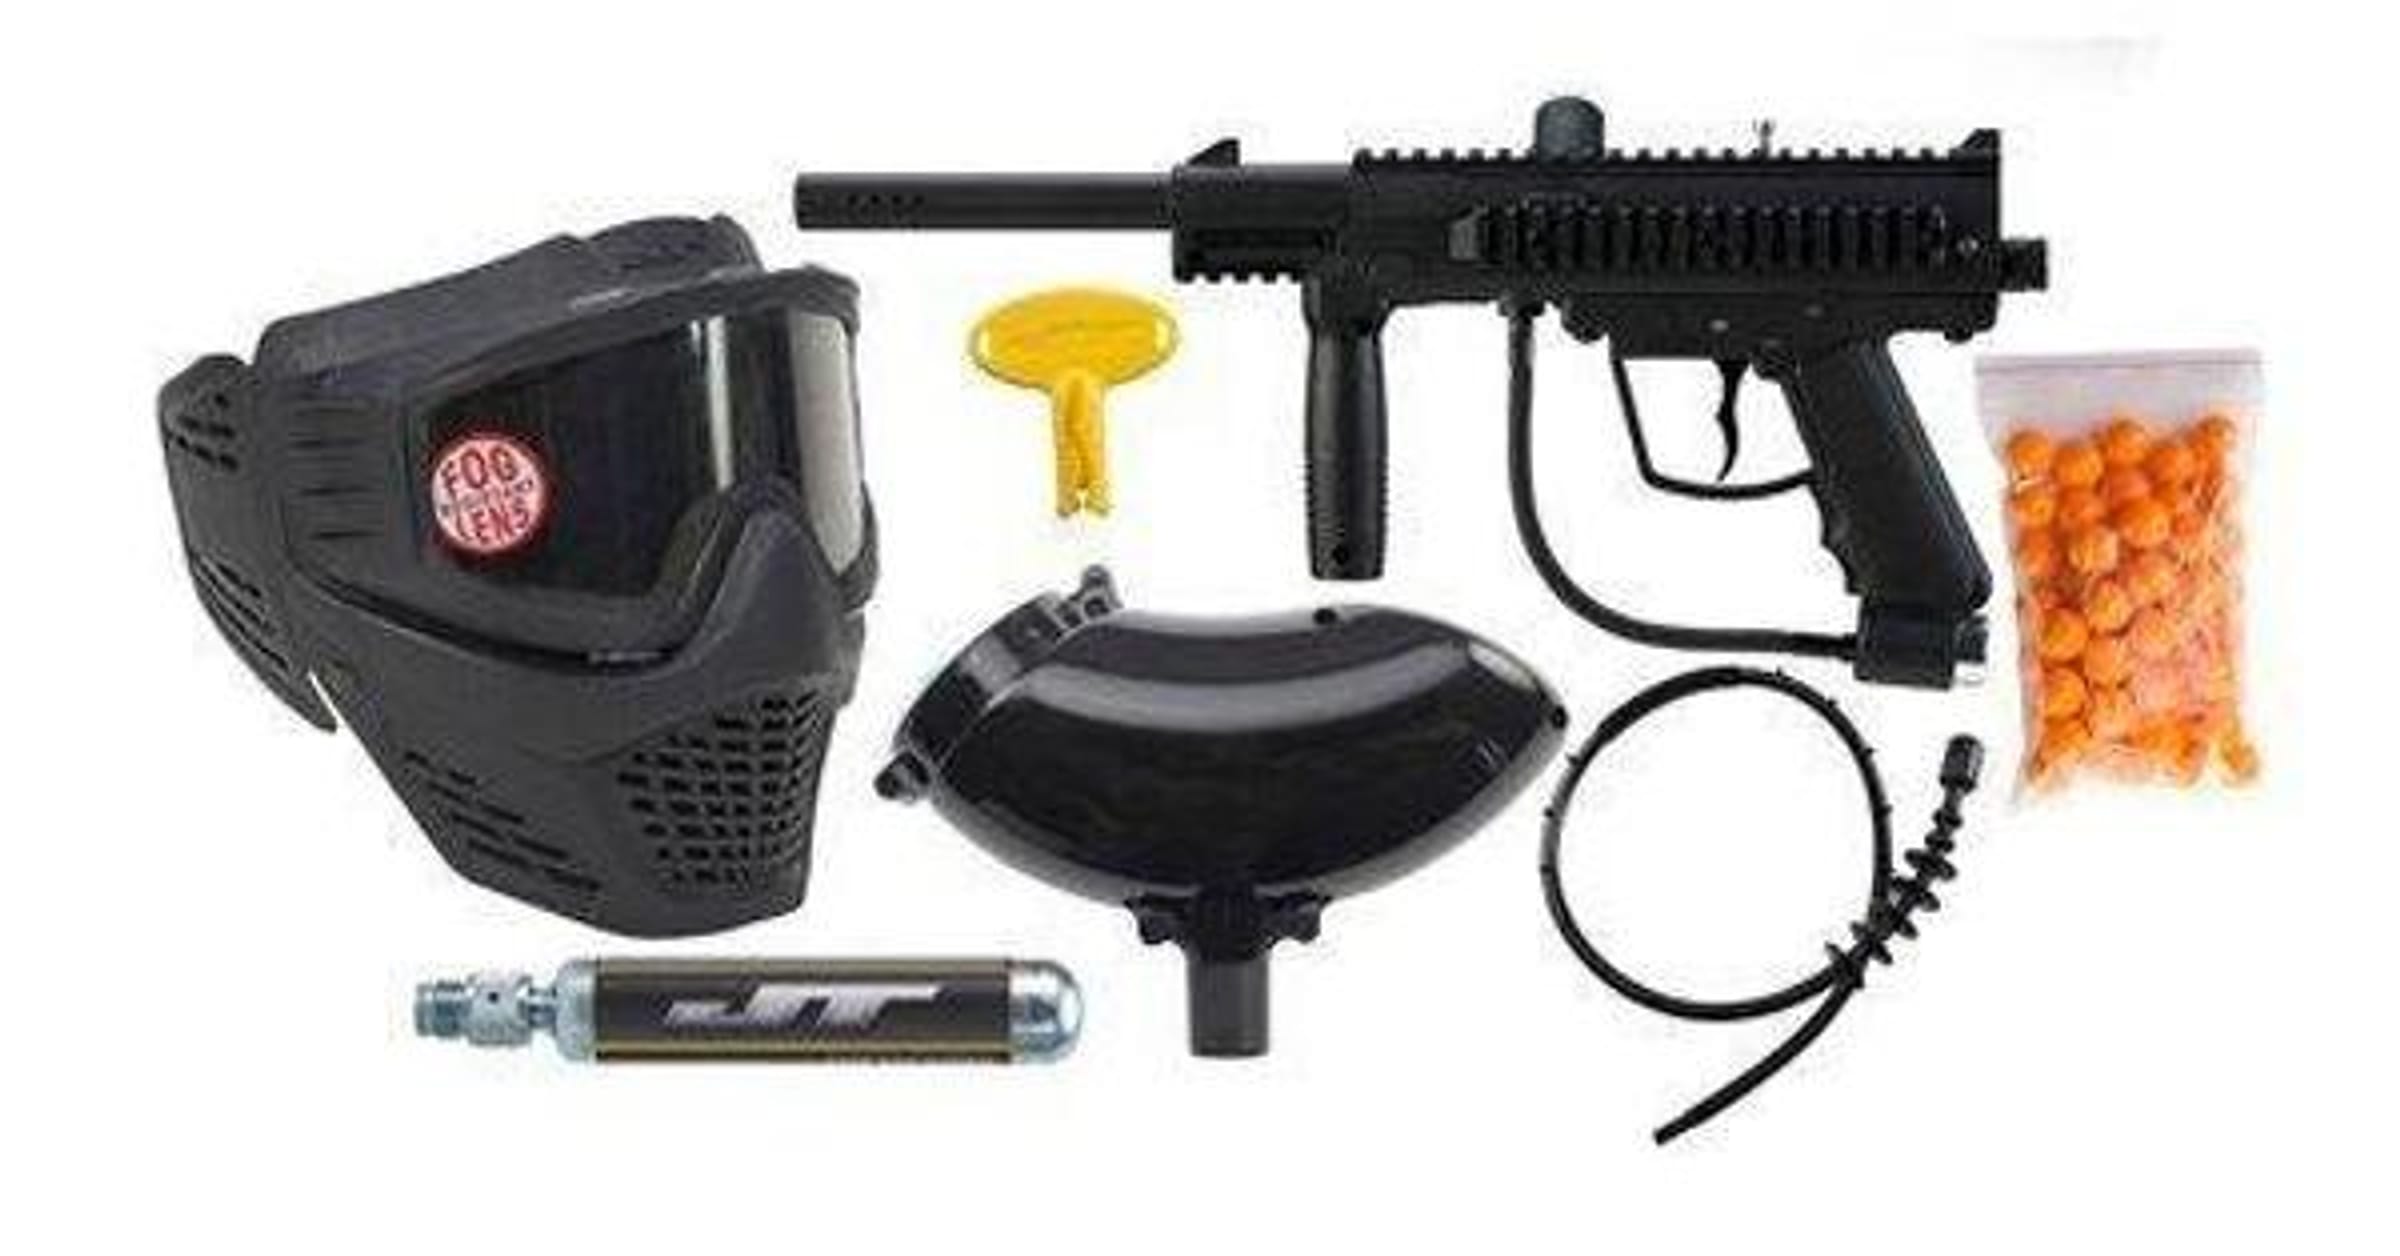 Tippmann Gryphon Paintball Marker Gun 3Skull Sniper Set 